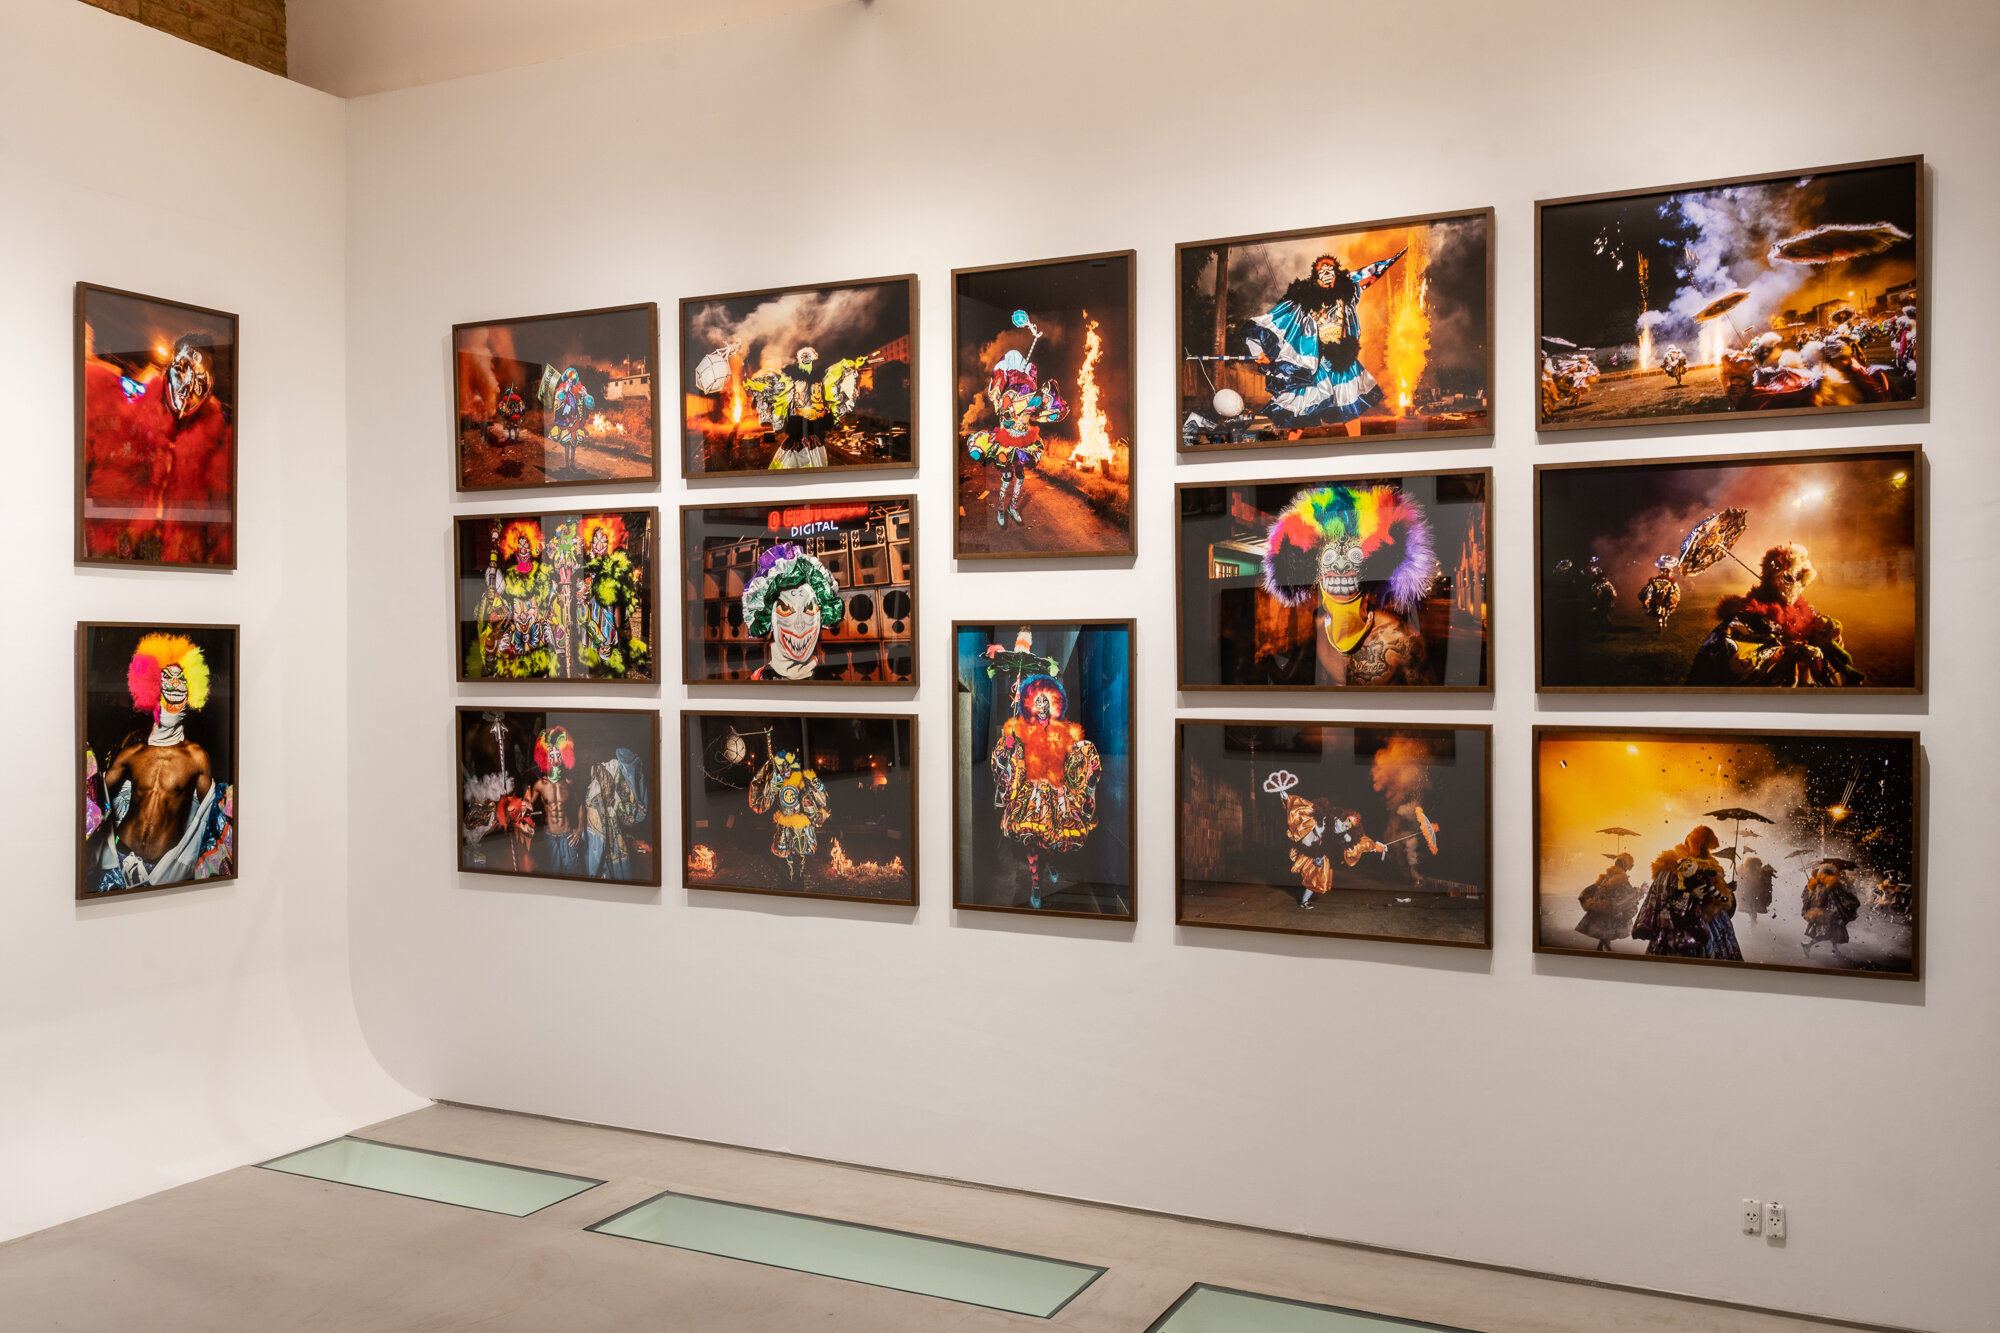  Exhibit « RIO NIGHT FEVER » by Vincent Rosenblatt at the Galeria da Gávea, Rio de Janeiro 2020 